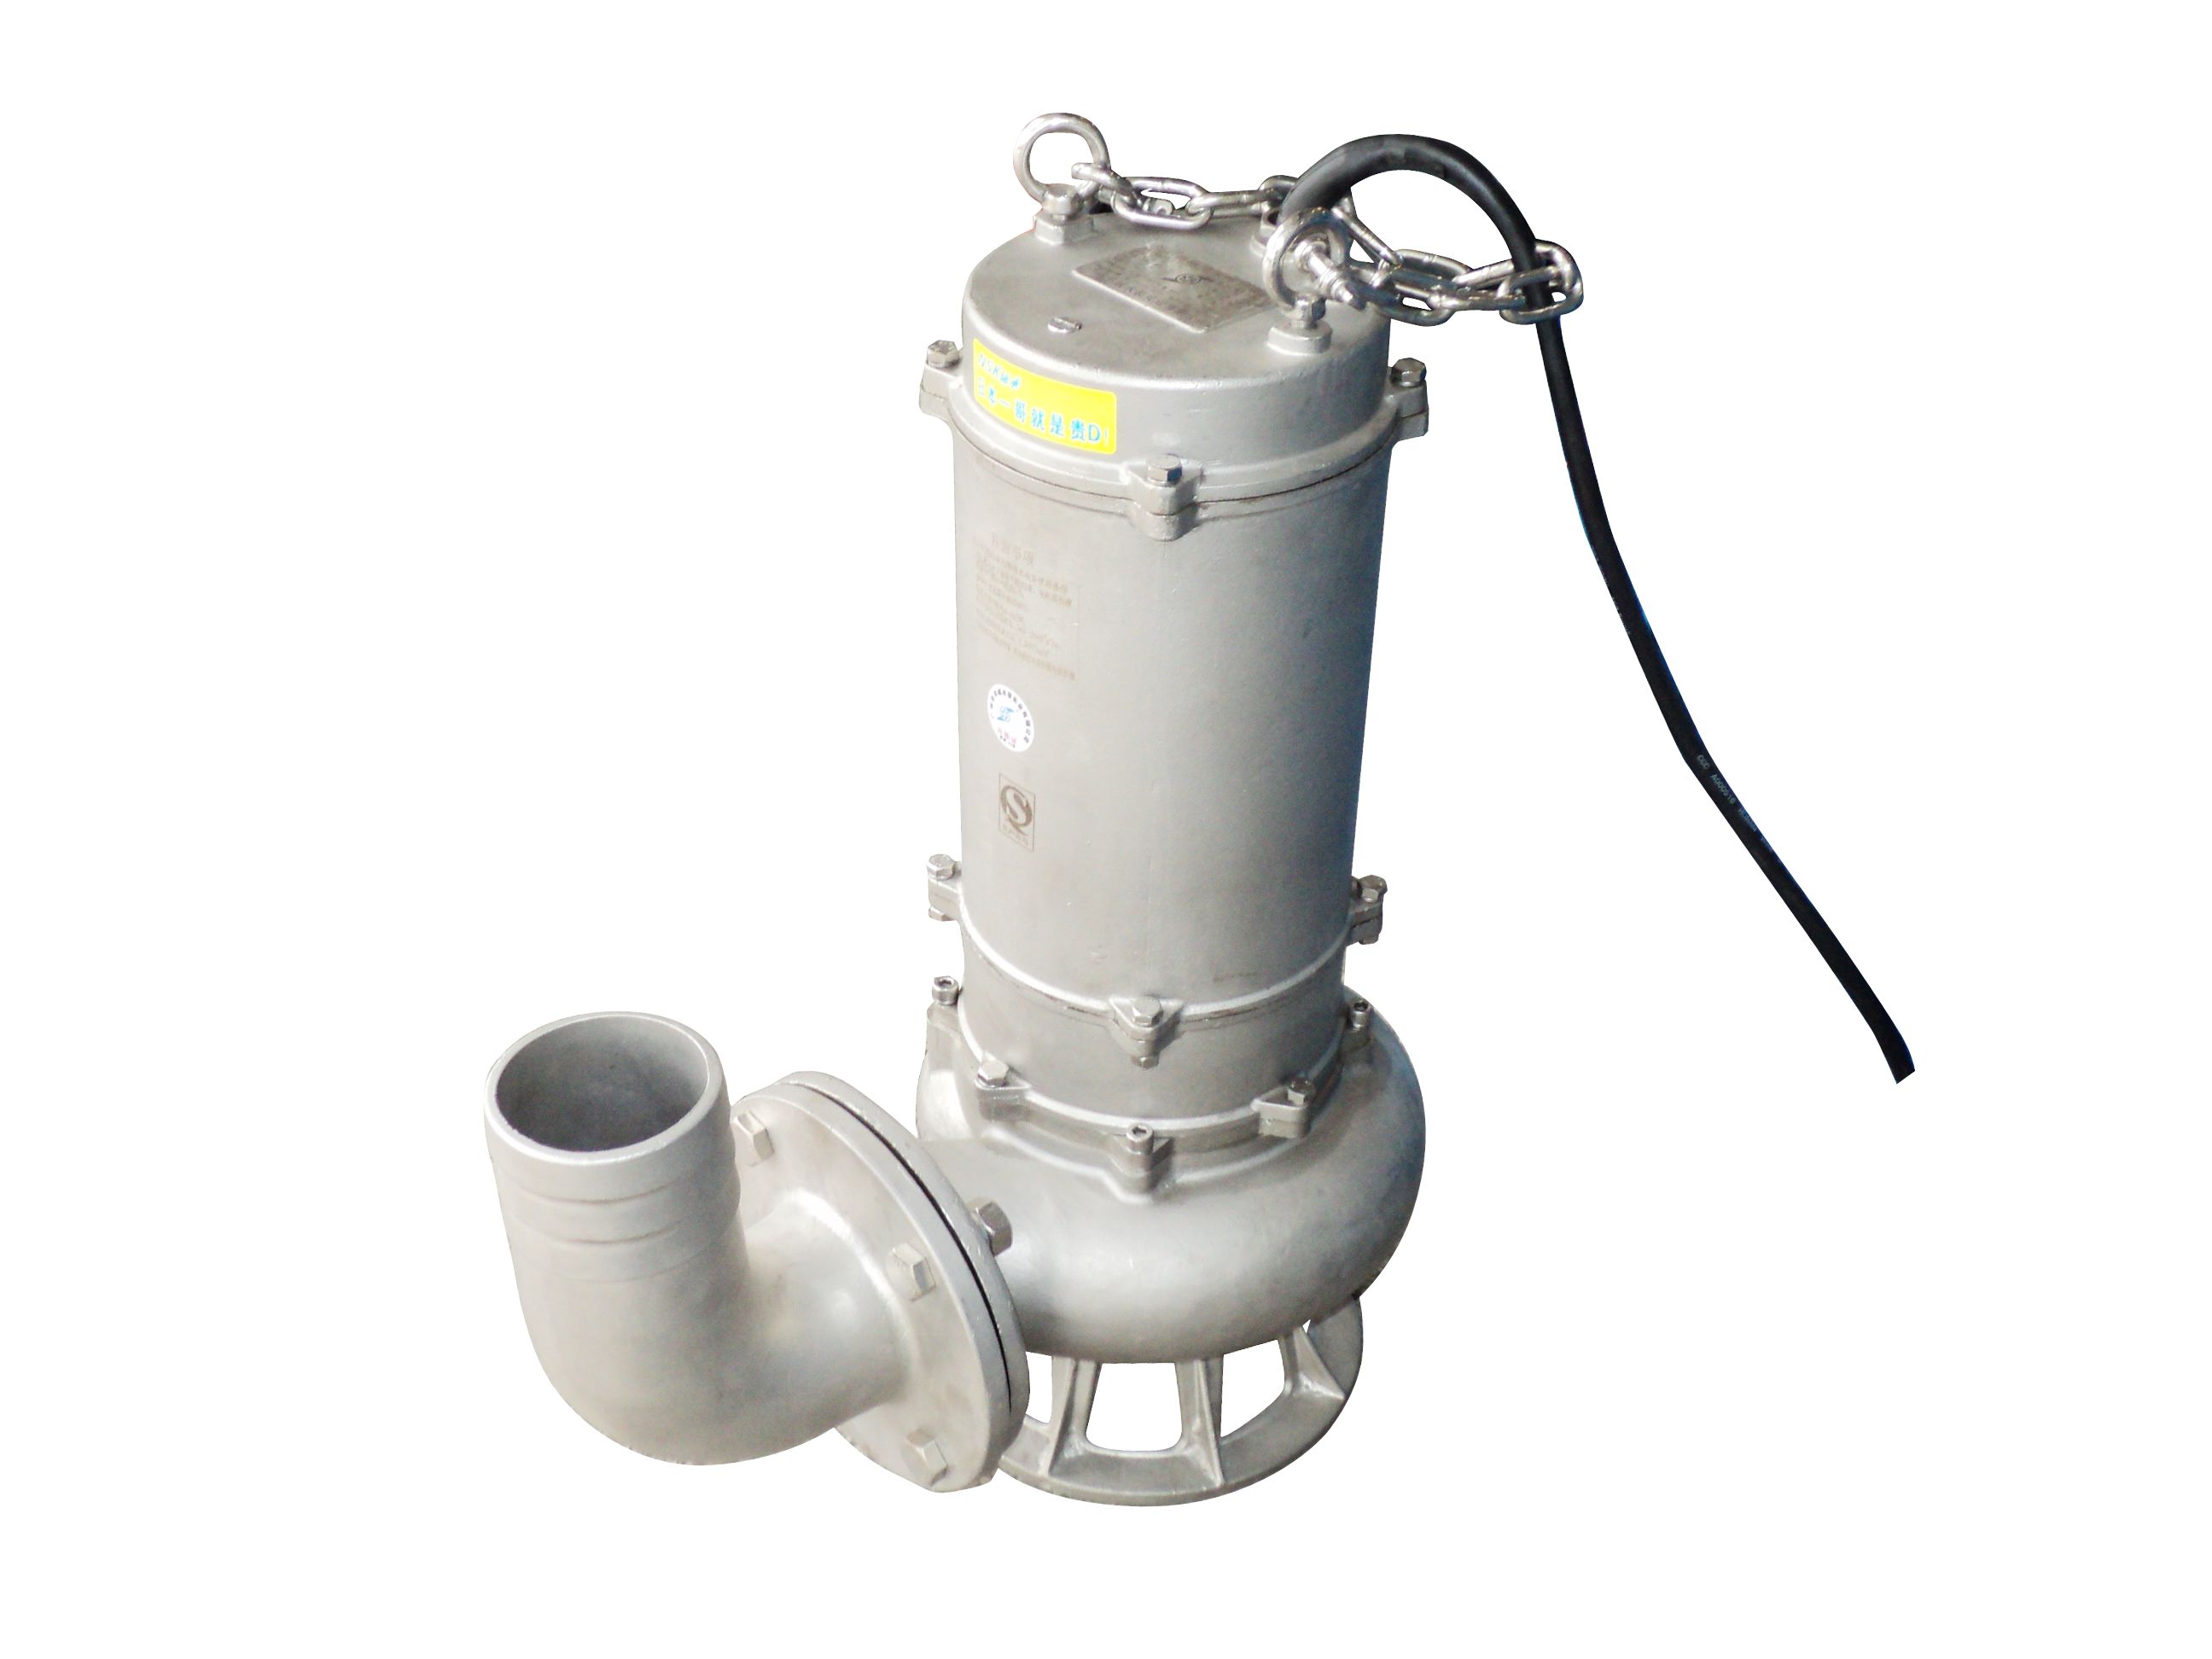 羊城水泵|WF不锈钢潜水泵|广州羊城水泵厂|羊城泵业|清远水泵